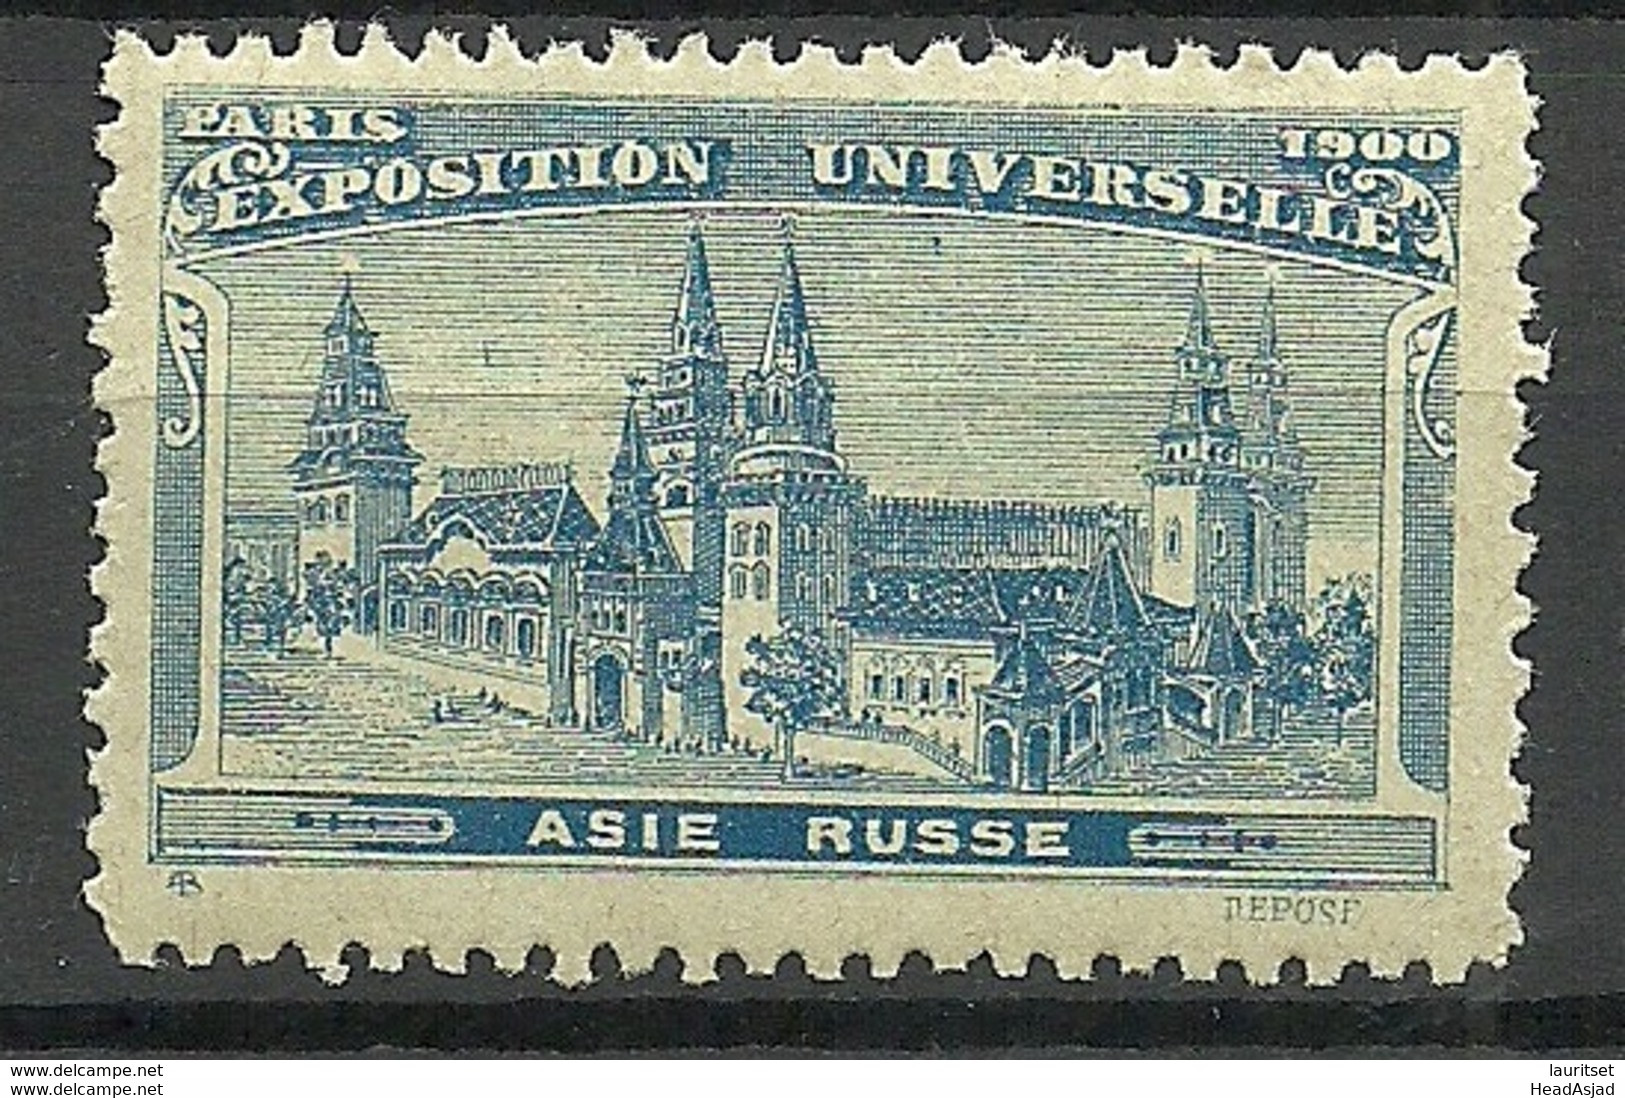 France 1900 EXPOSITION UNIVERSELLE Paris Asie Russe Pavillon MNH - 1900 – Pariis (France)